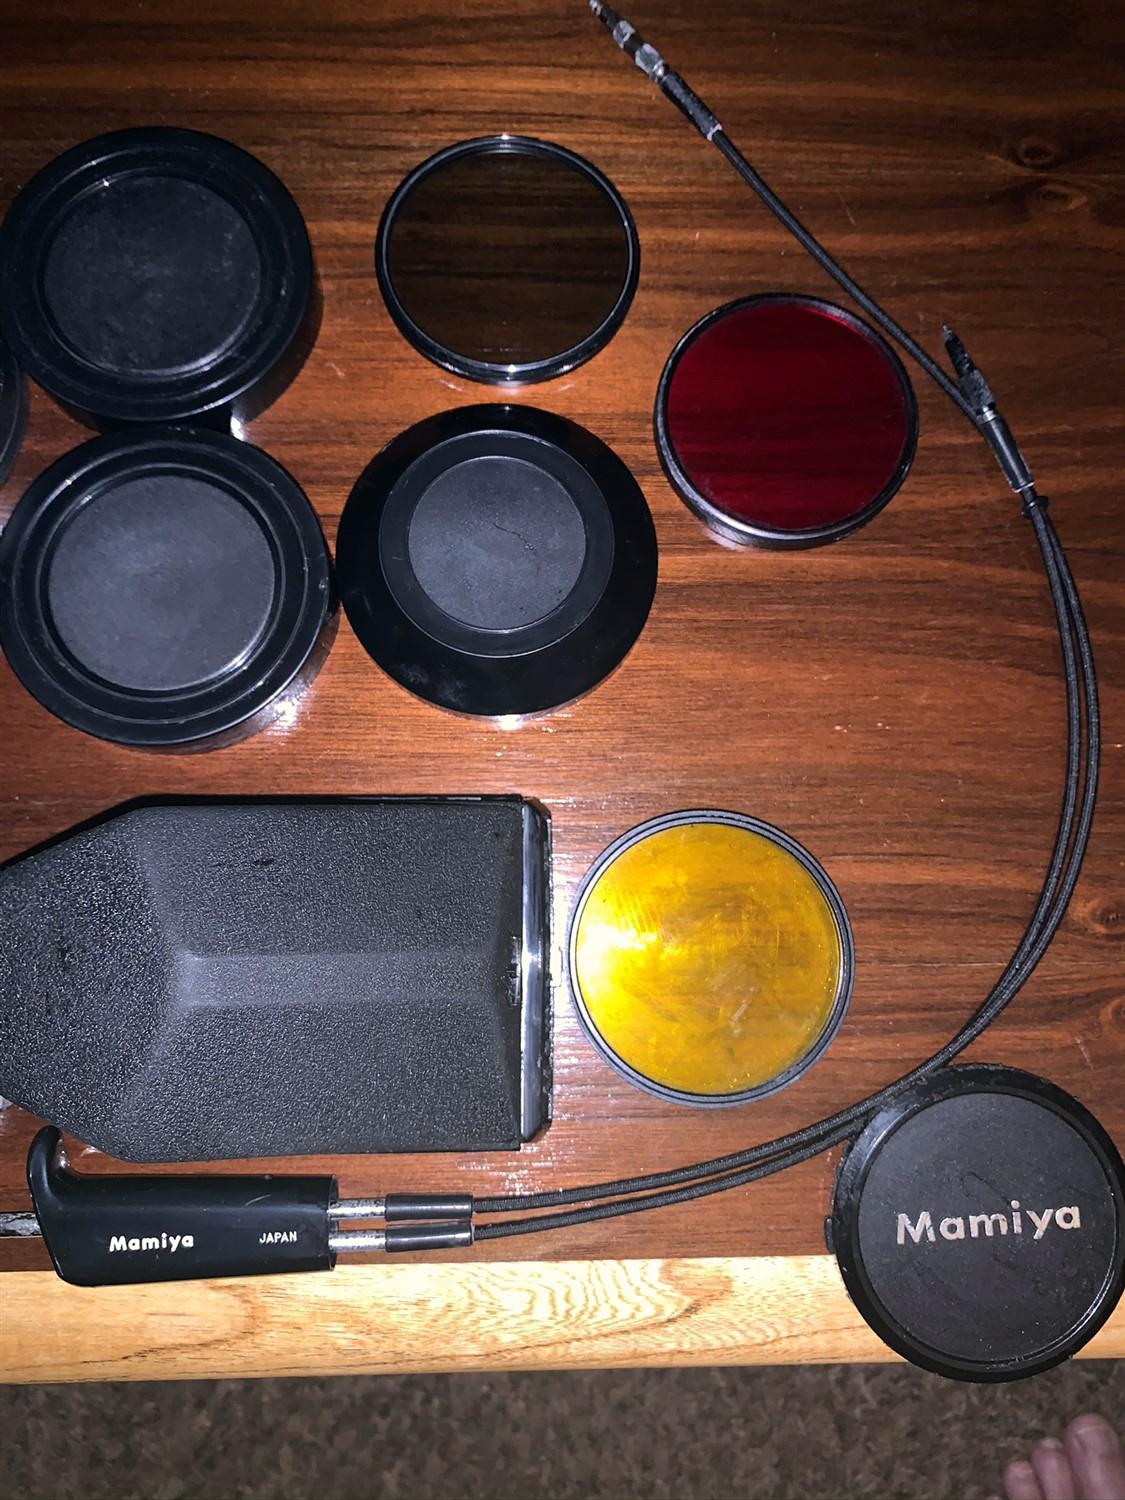 Mamiya  RB67 Camera 3 Mamiya  Lenses and Numerous Accessories